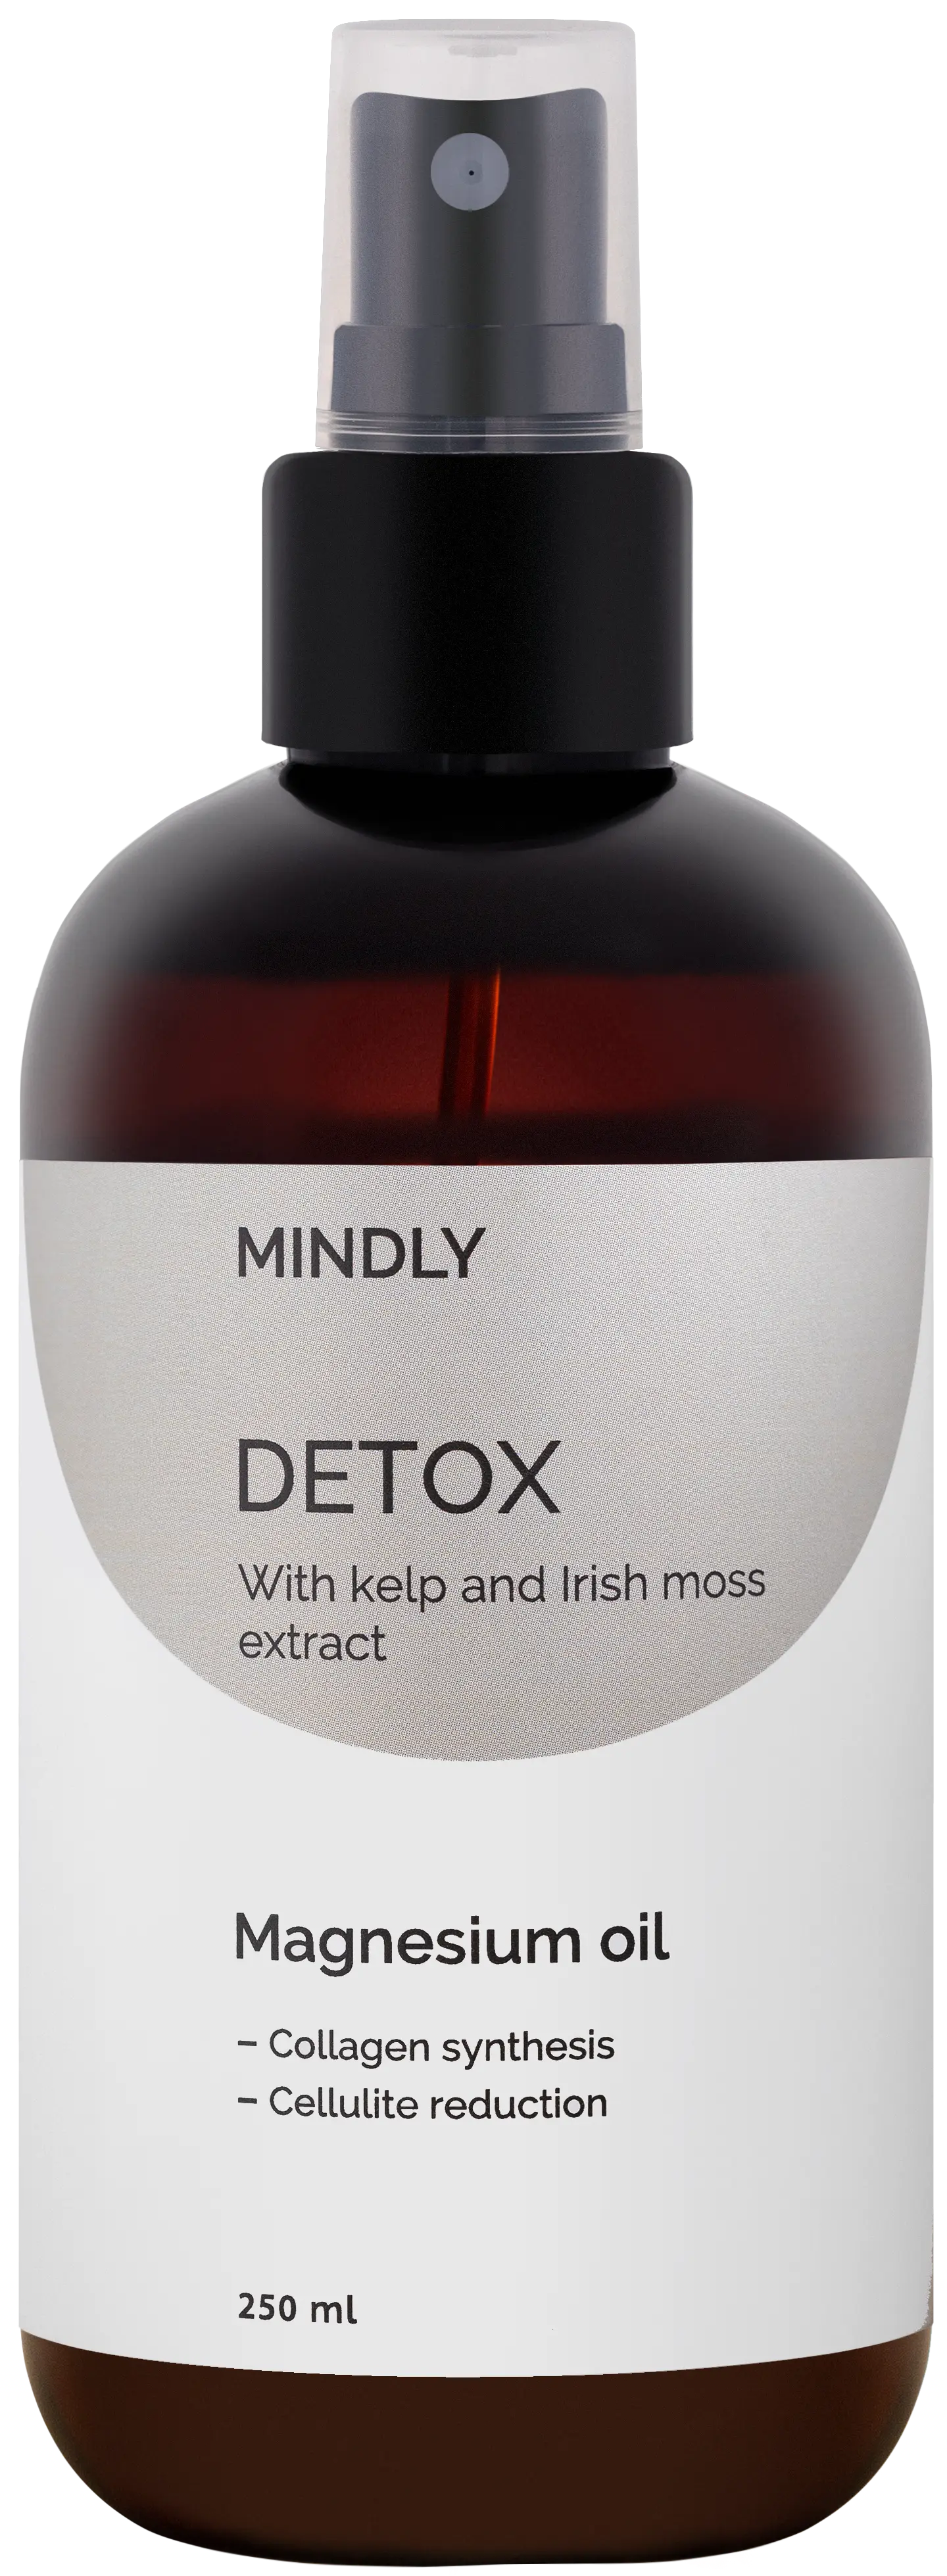 MINDLY Detox